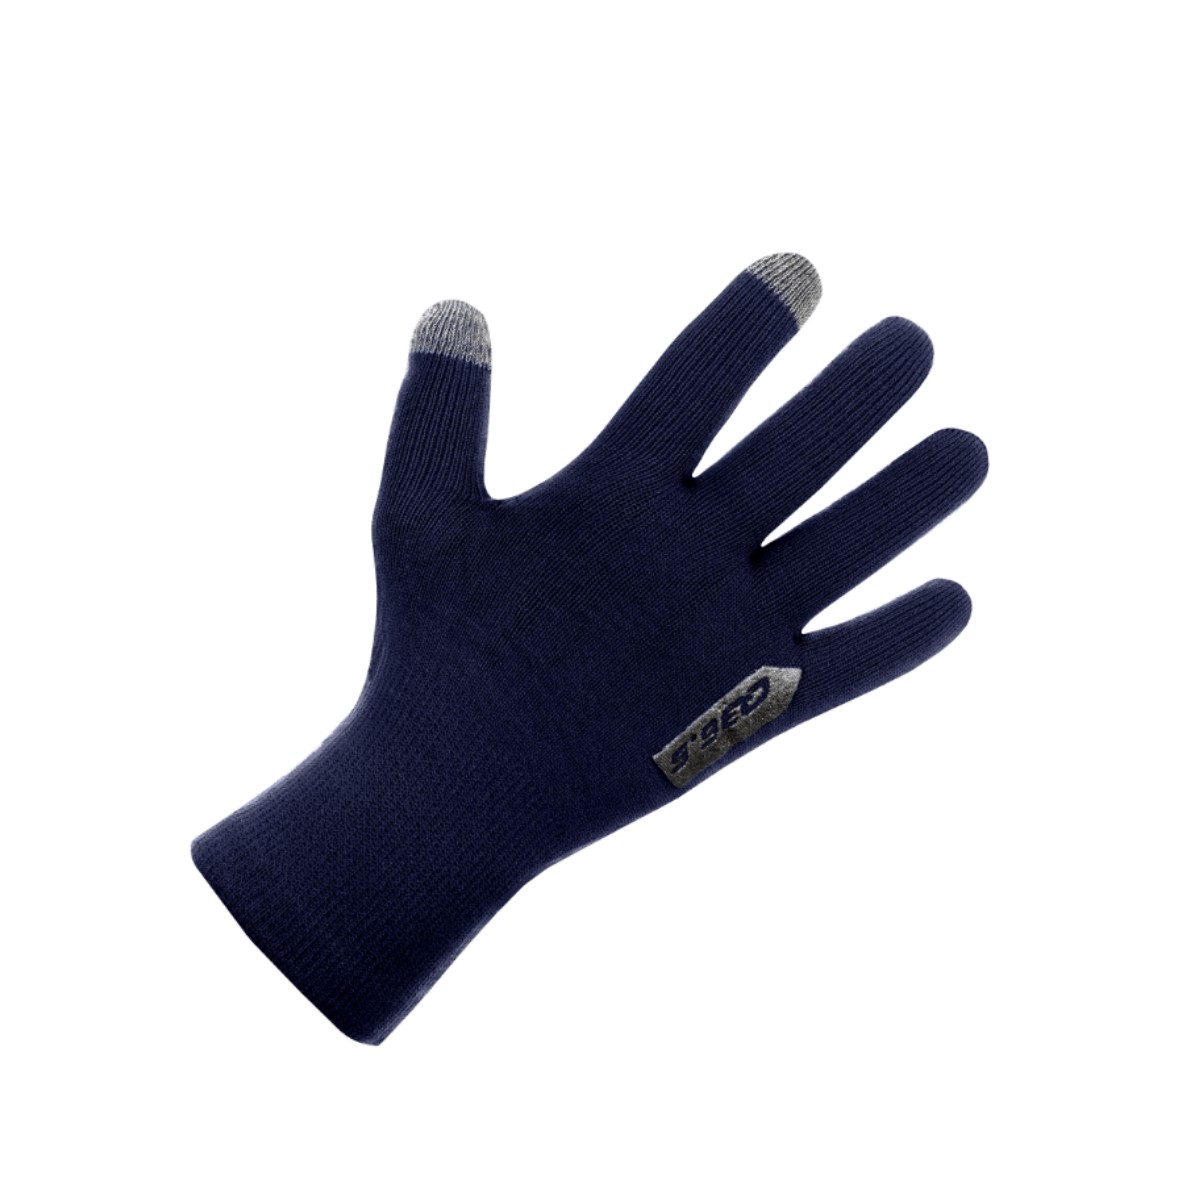 Handschuhe Q36.5 Anfibio Blau, Größe S